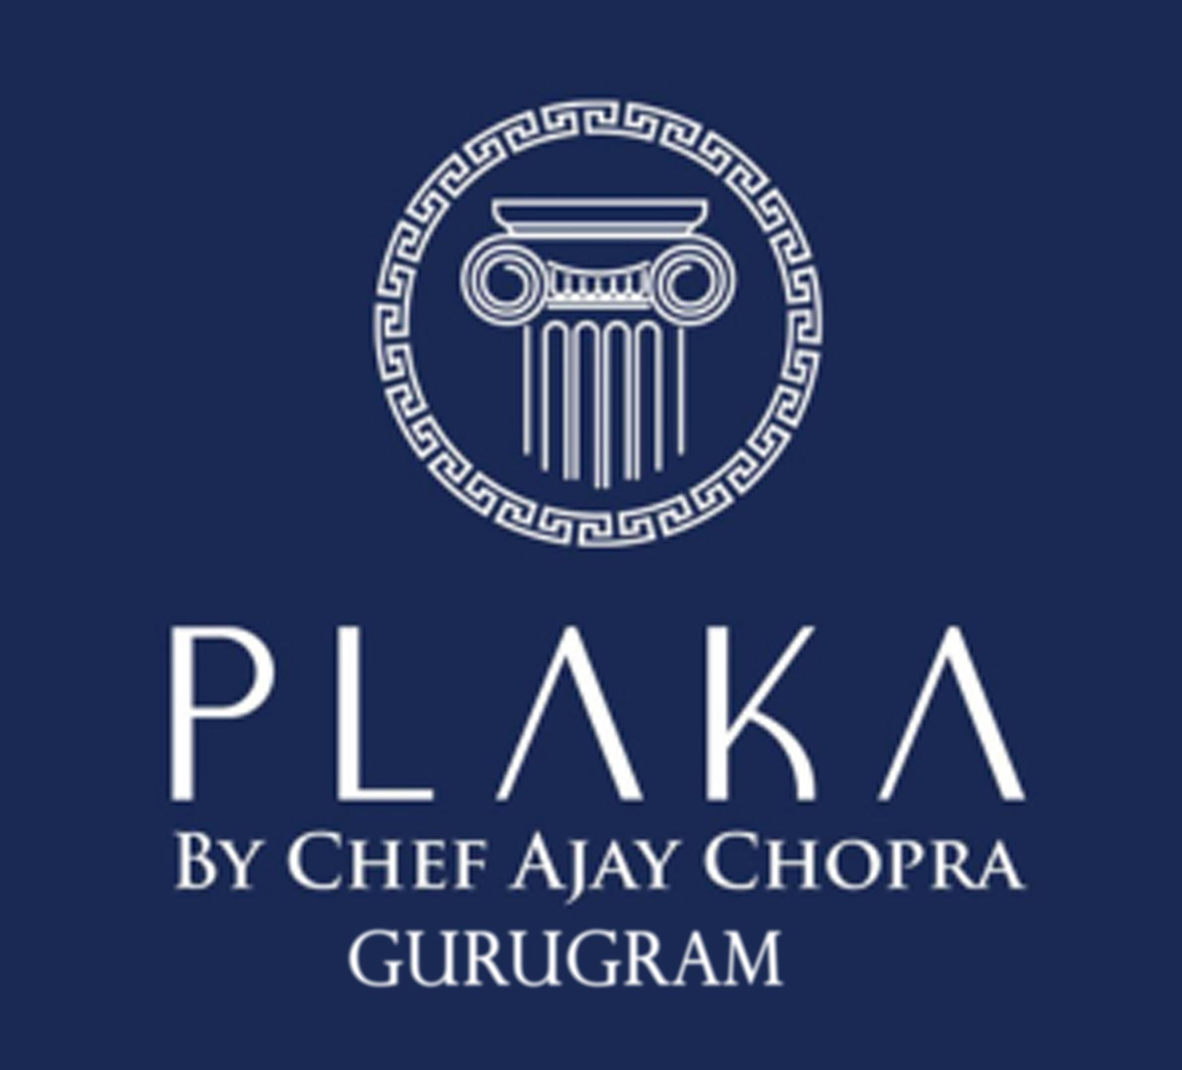 PLAKA By Chef Ajay Chopra